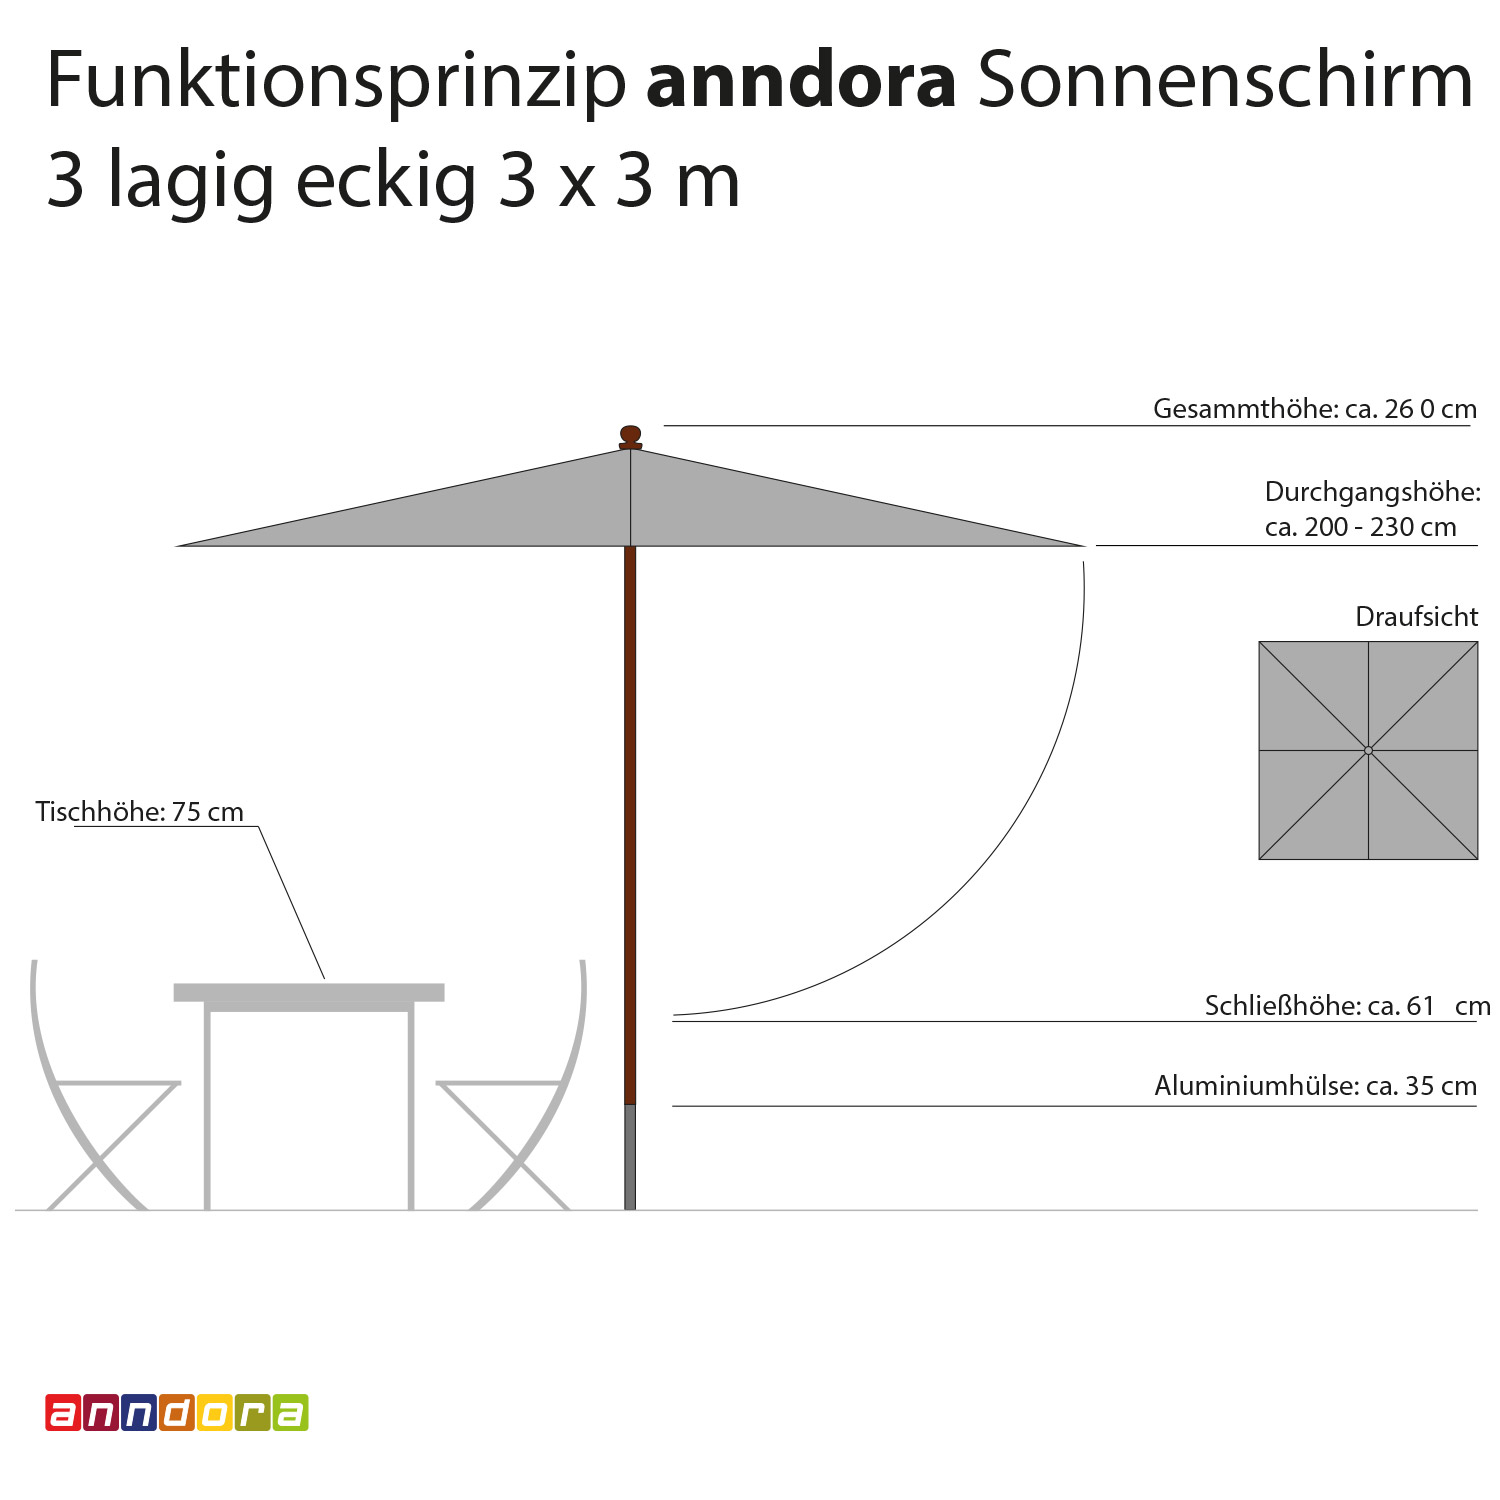 anndora Sonnenschirm 3x3m eckig 3-lagig Natural UV-Schutz - 3